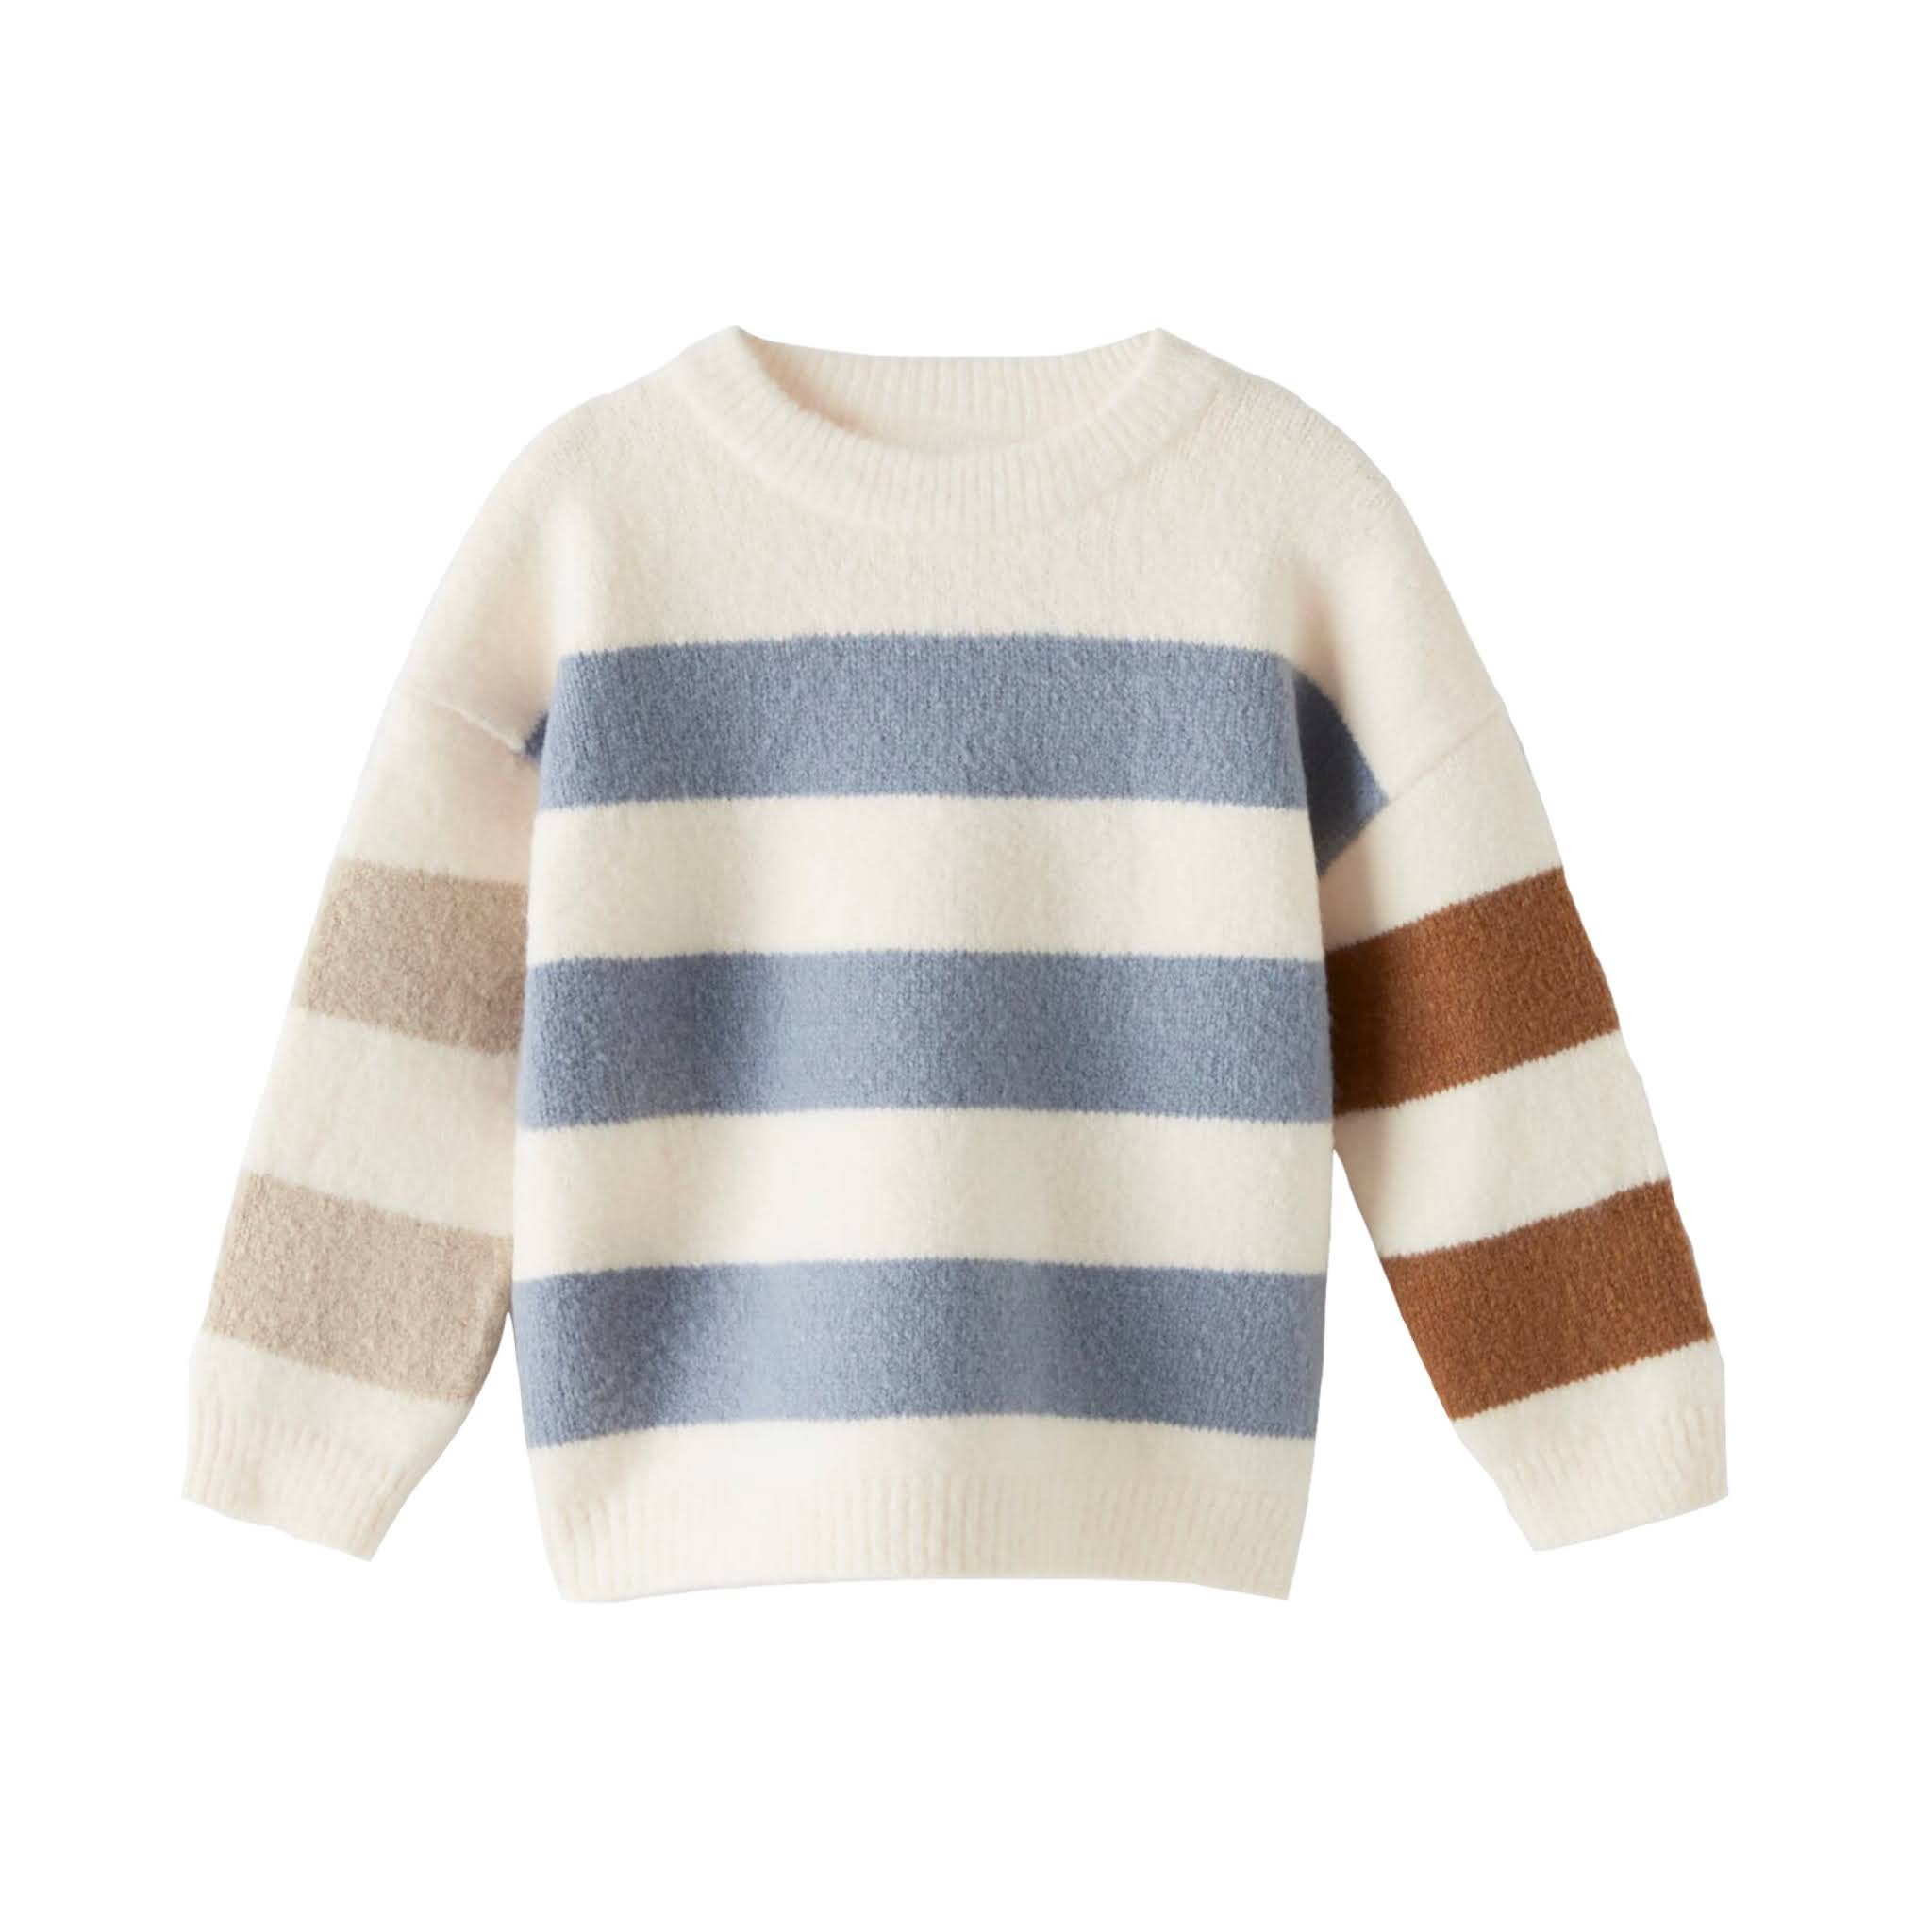 Boys Striped Sweater from Zara Kids